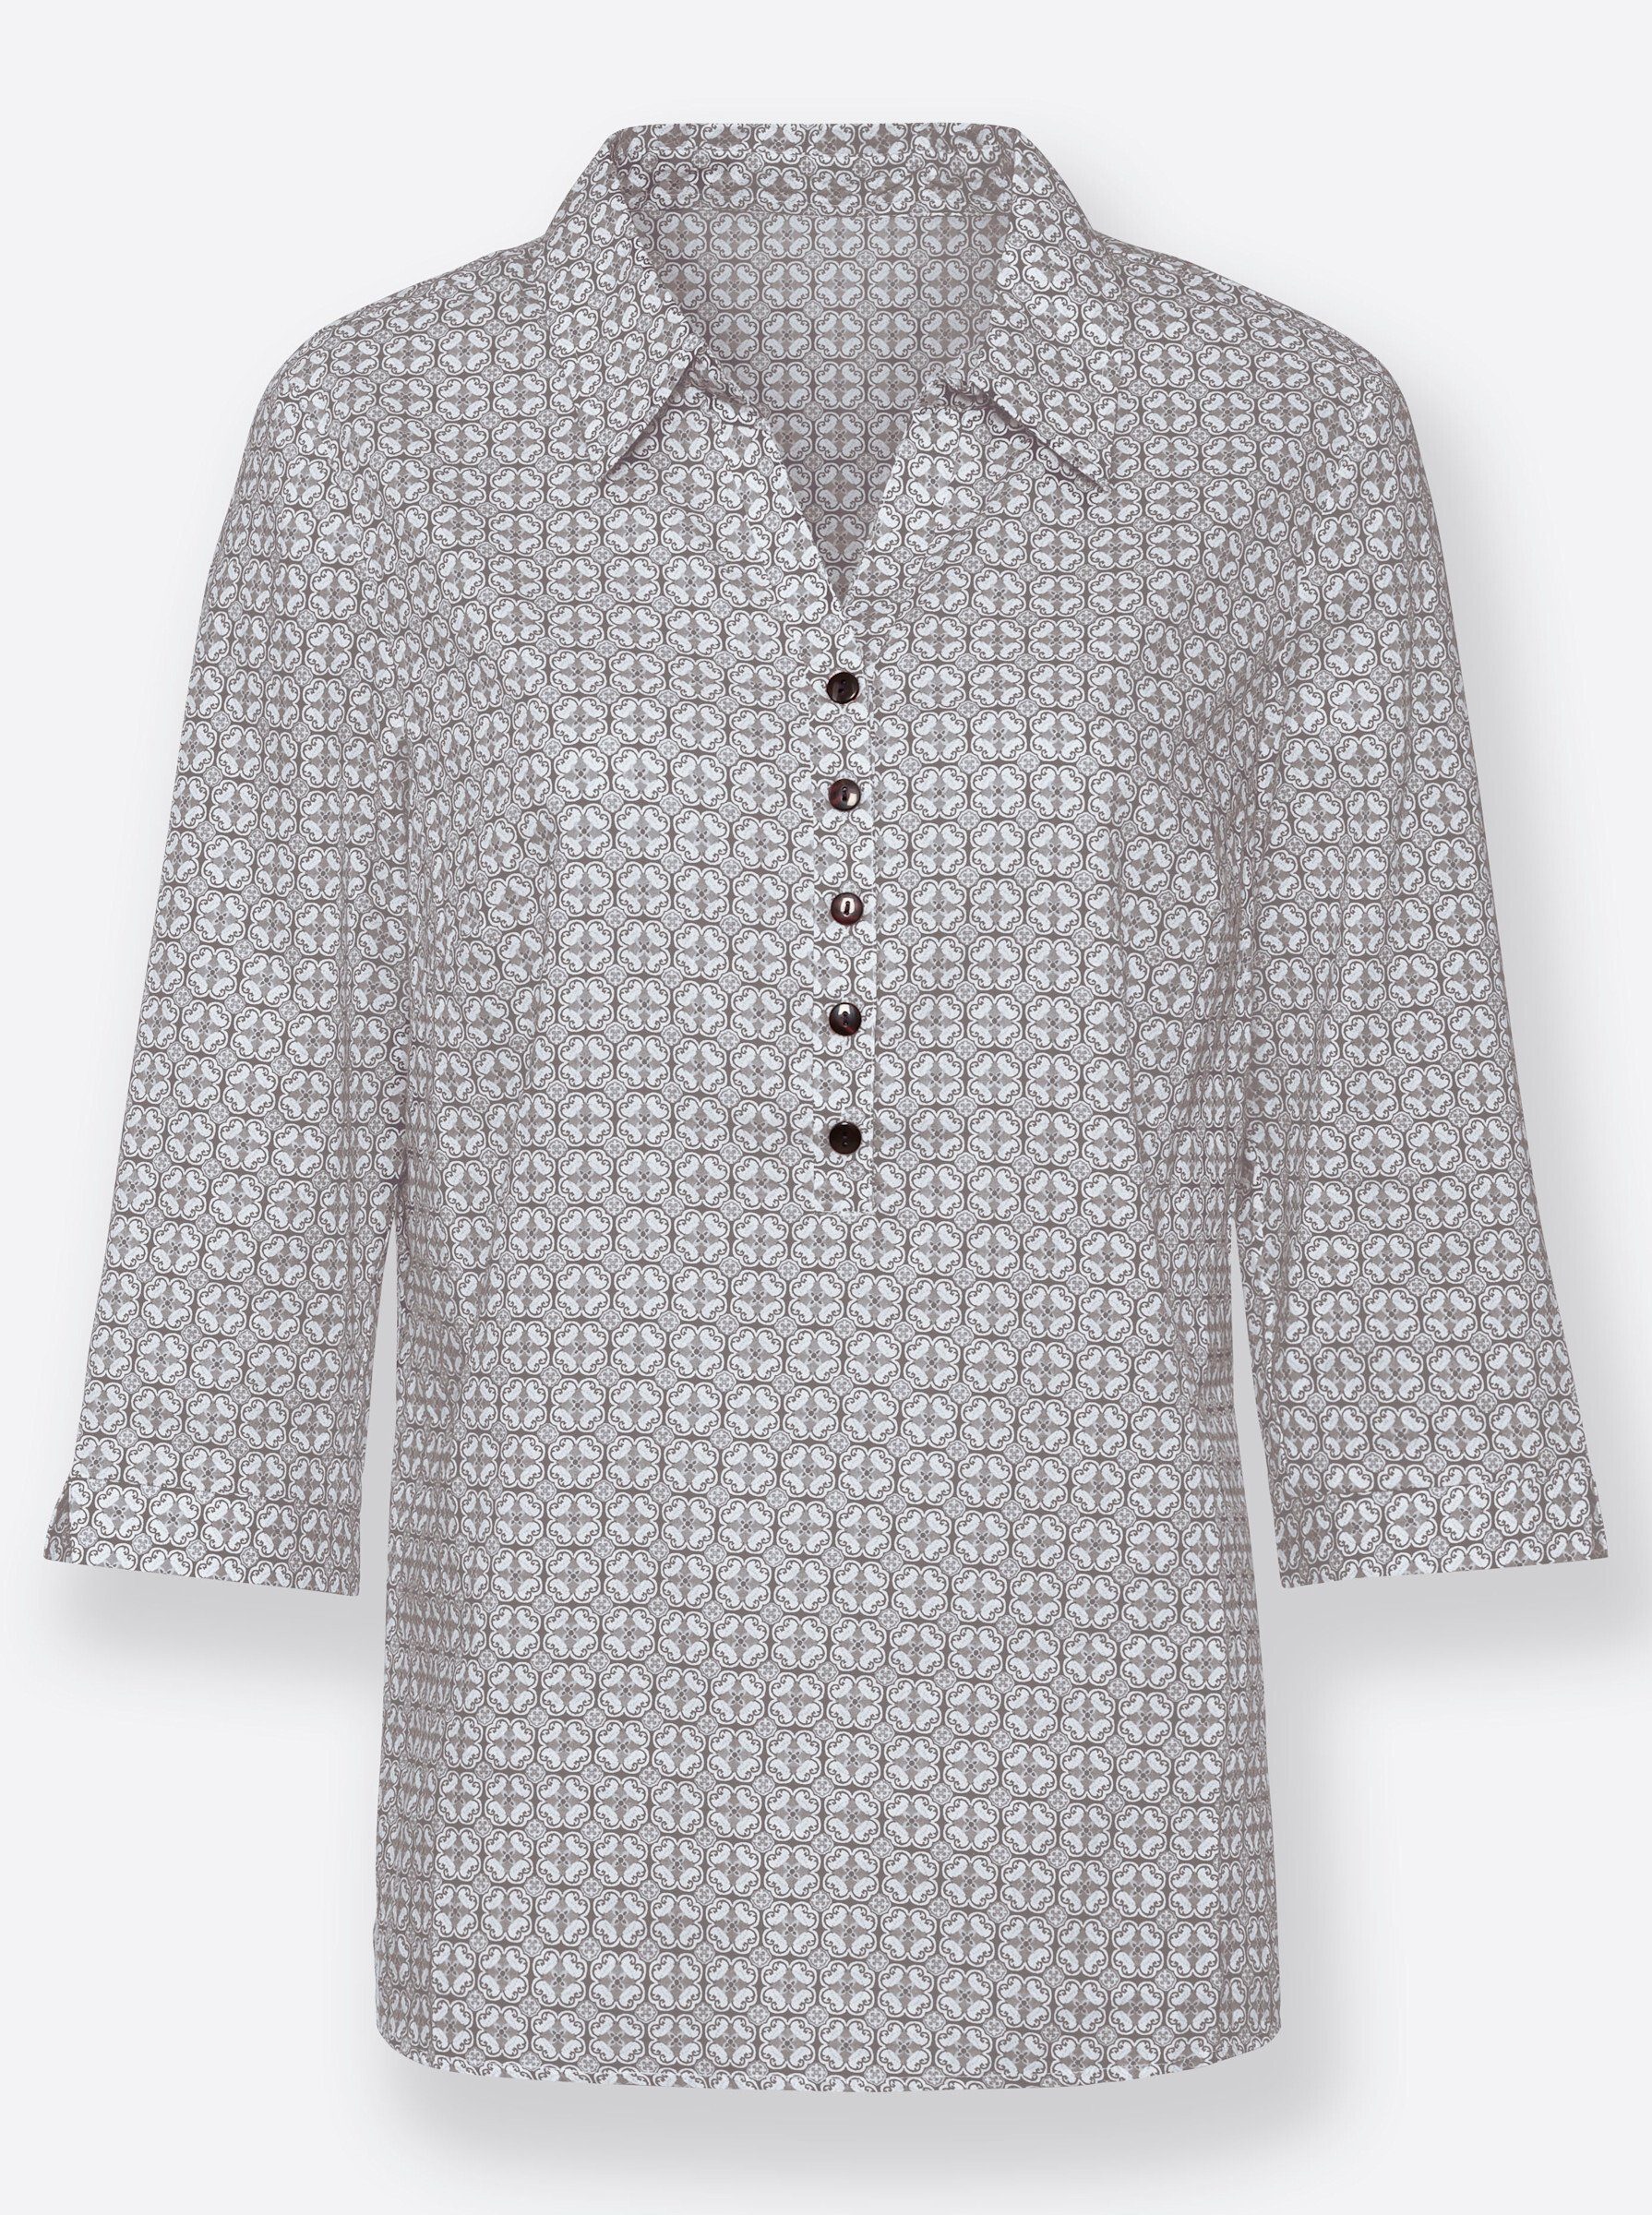 WEIDEN Klassische Bluse grau-weiß-bedruckt WITT